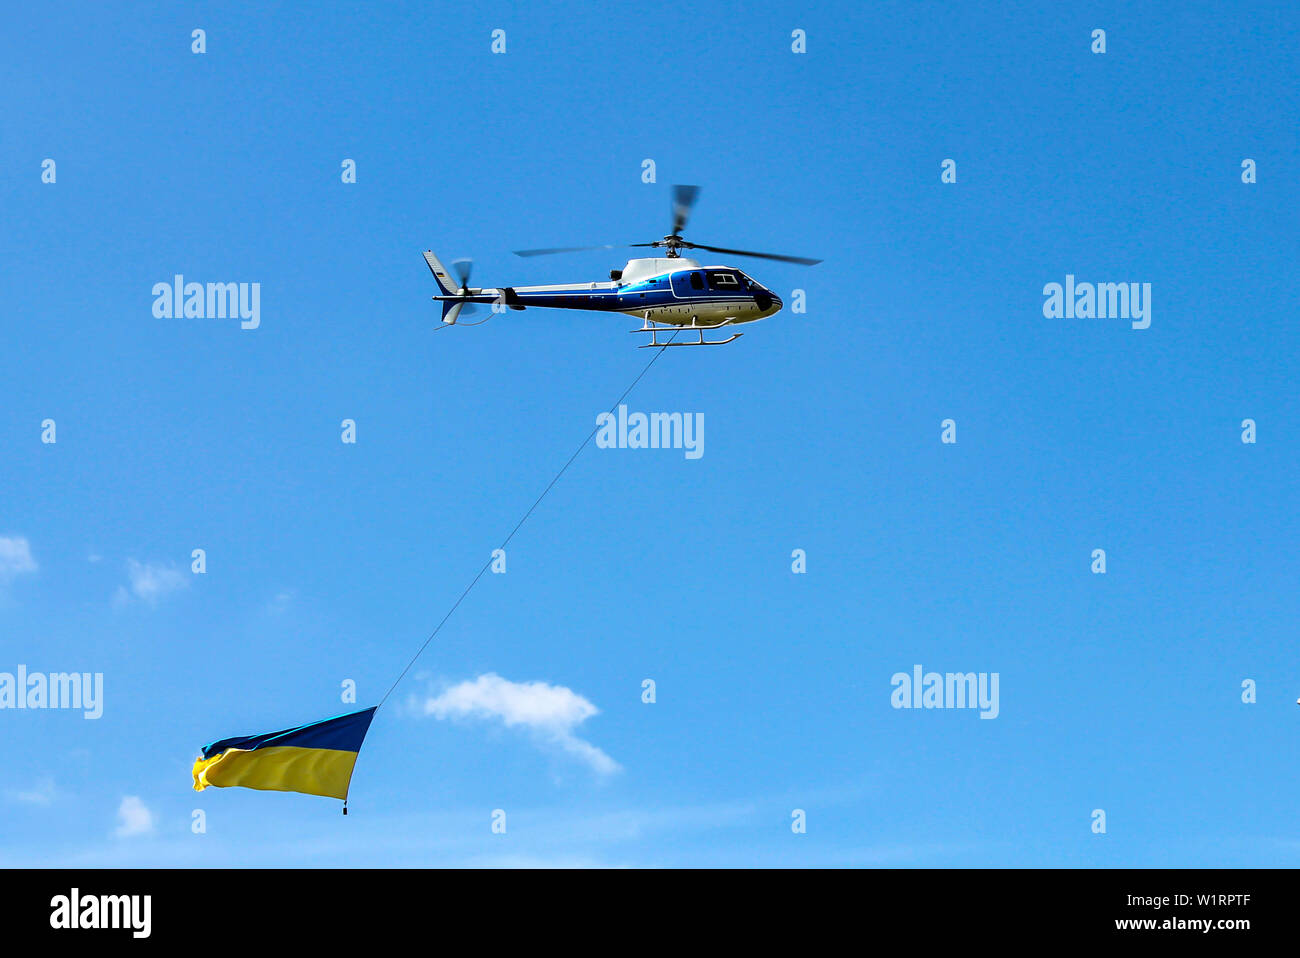 L'hélicoptère vole avec l'état national jaune bleu drapeau de l'Ukraine. Pavillon ukrainien dans le ciel au-dessus de la ville Dnepr, Dnipropetrovsk. L'Ukraine Banque D'Images